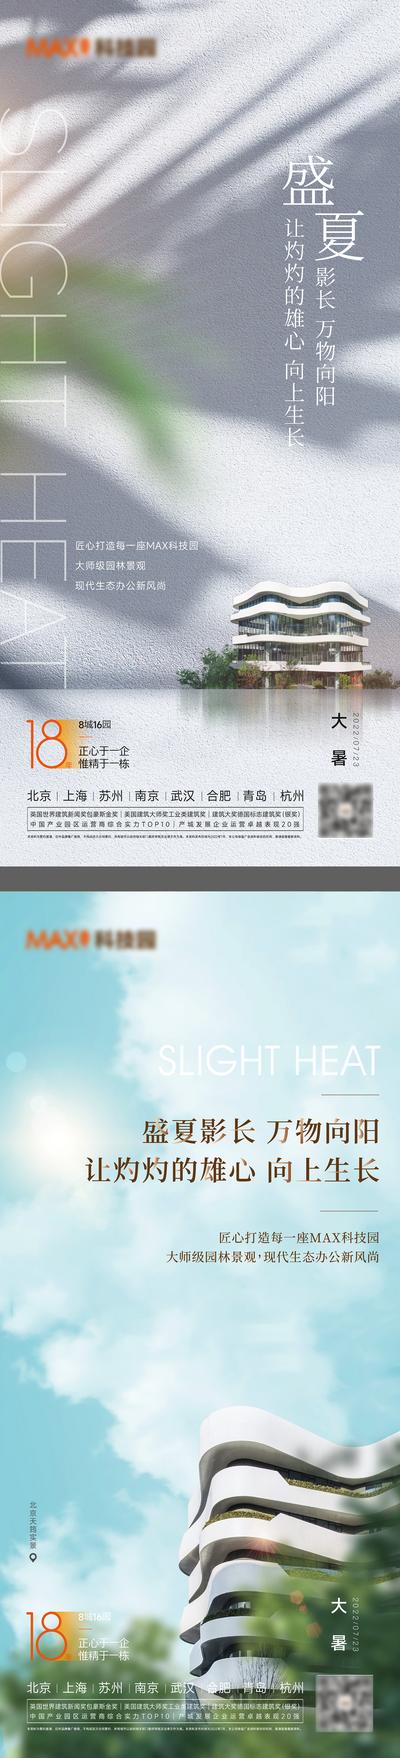 南门网 广告 海报 大暑 小暑 地产 节气 系列 品质